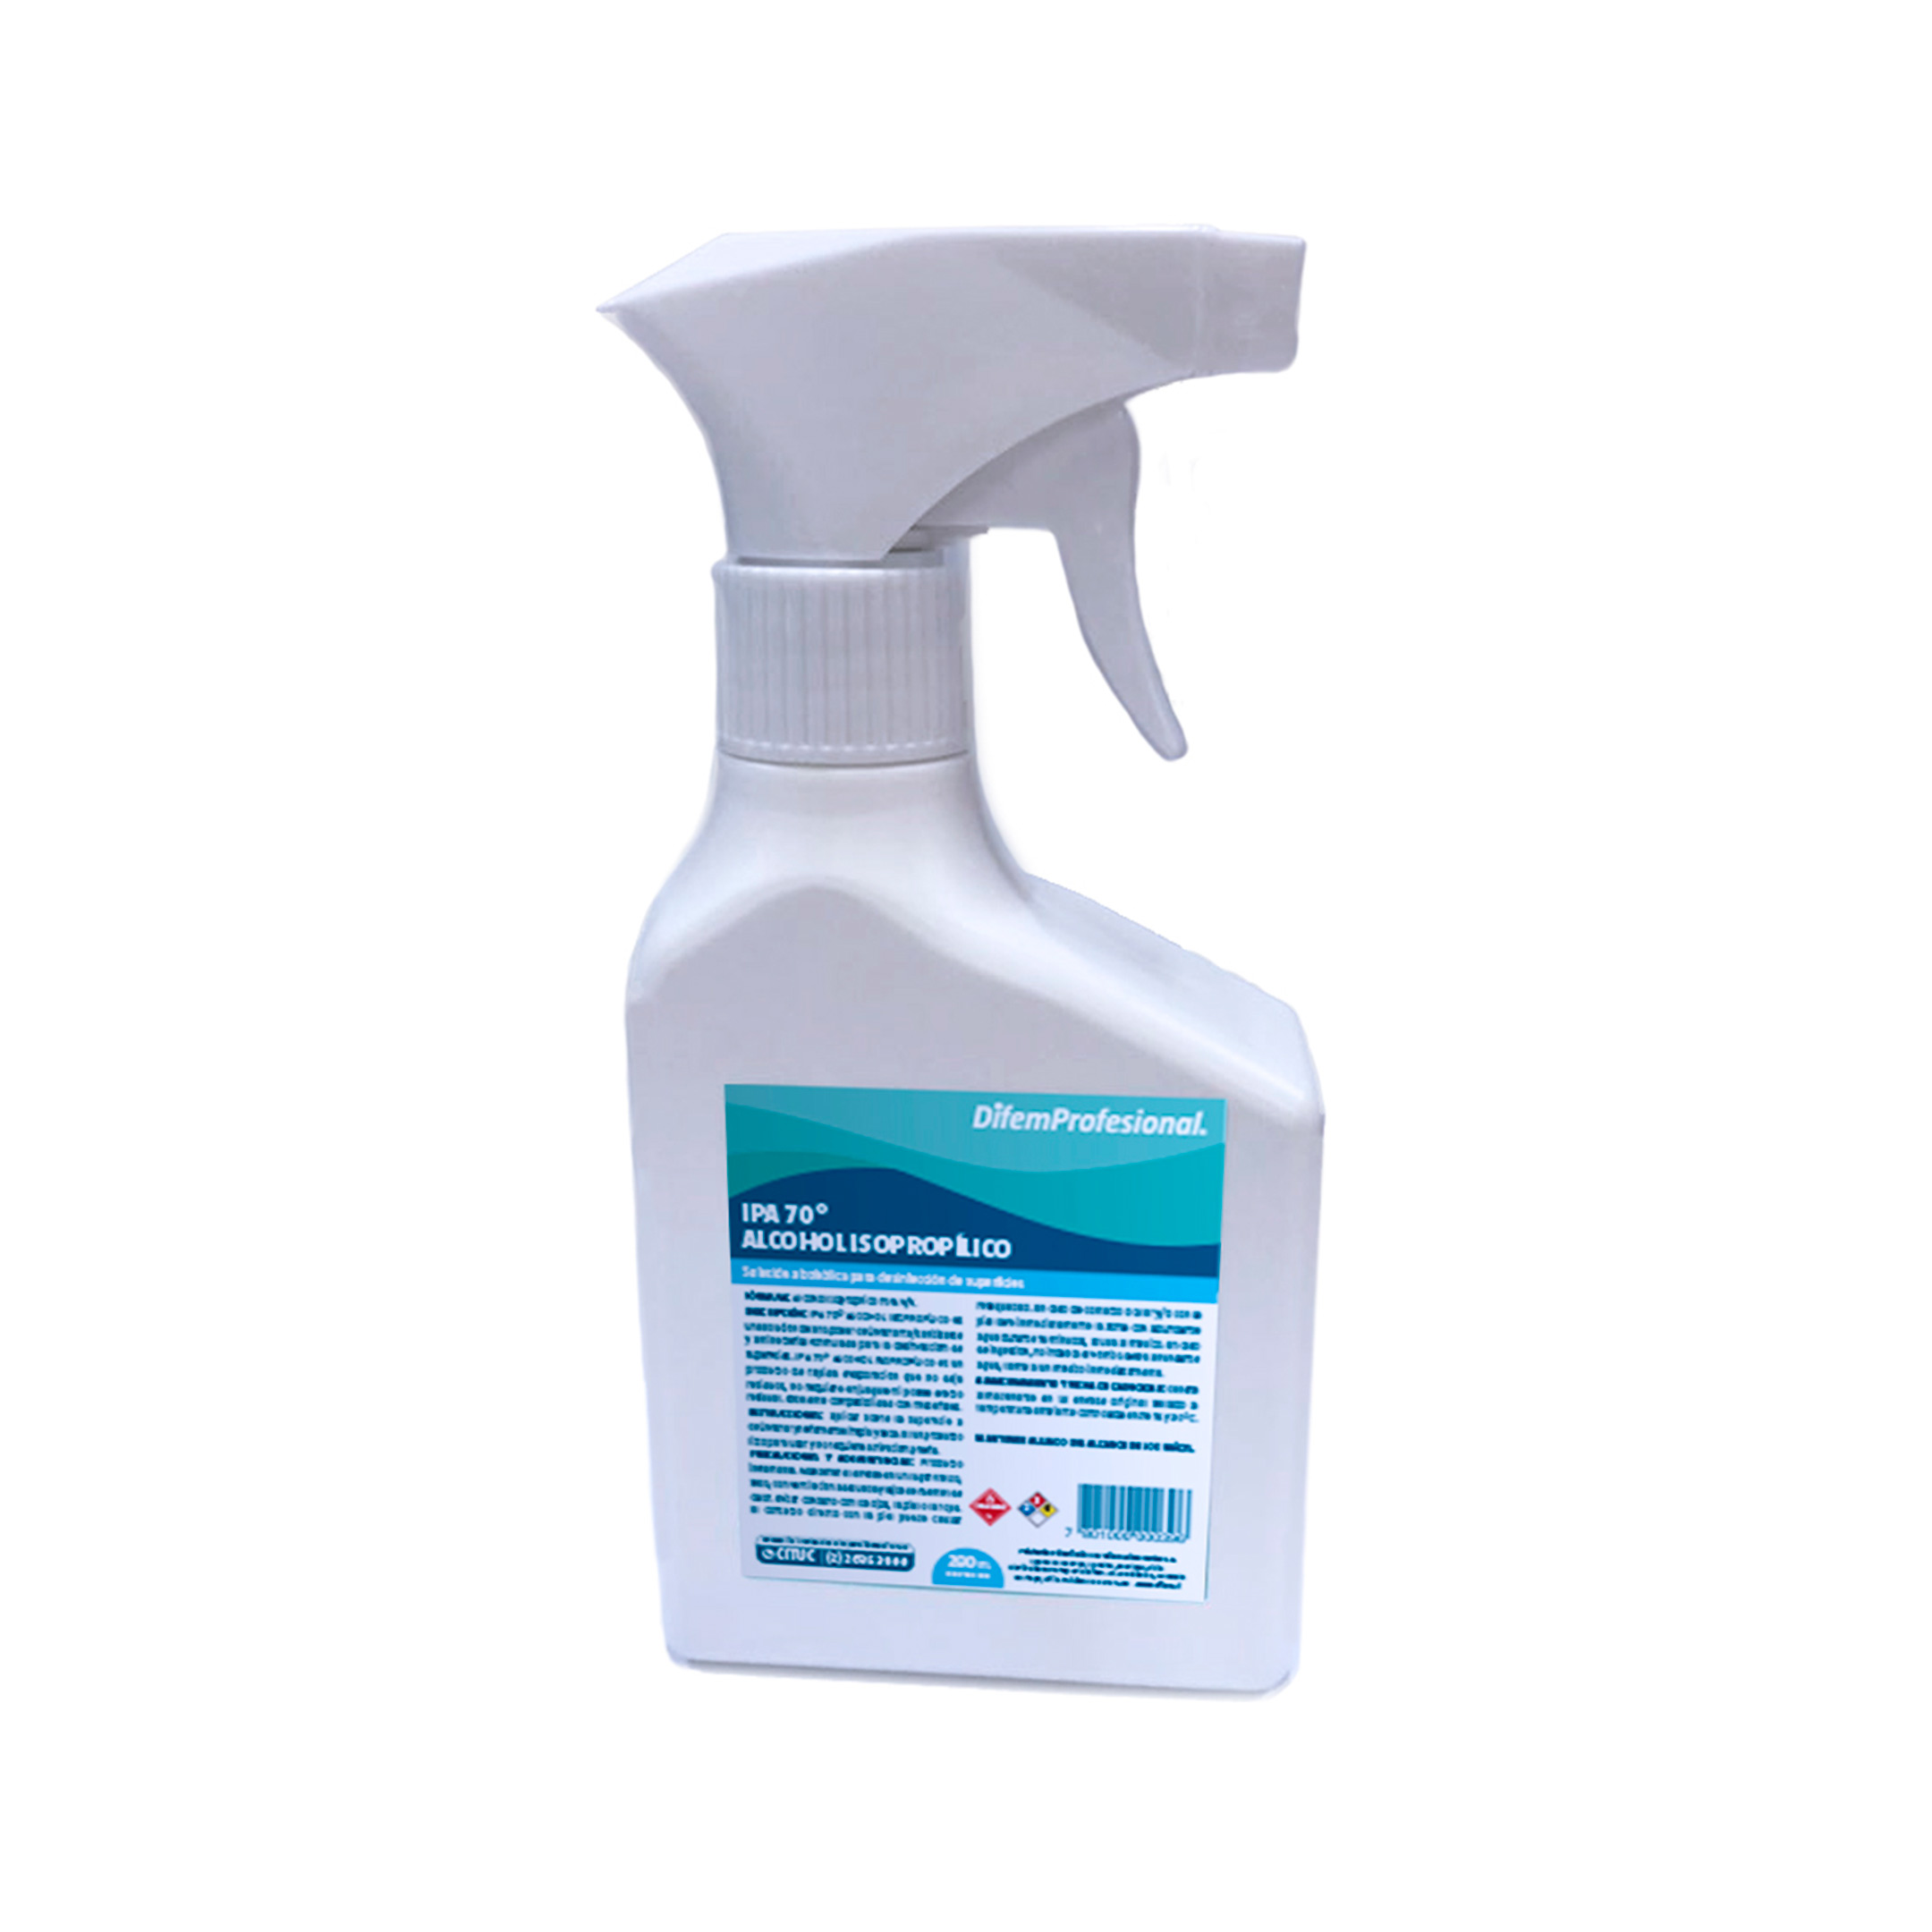 Solución alcohólica para la desinfección de superficies. Producto listo para usar, de rápida evaporación que no deja residuos y no requiere enjuague.